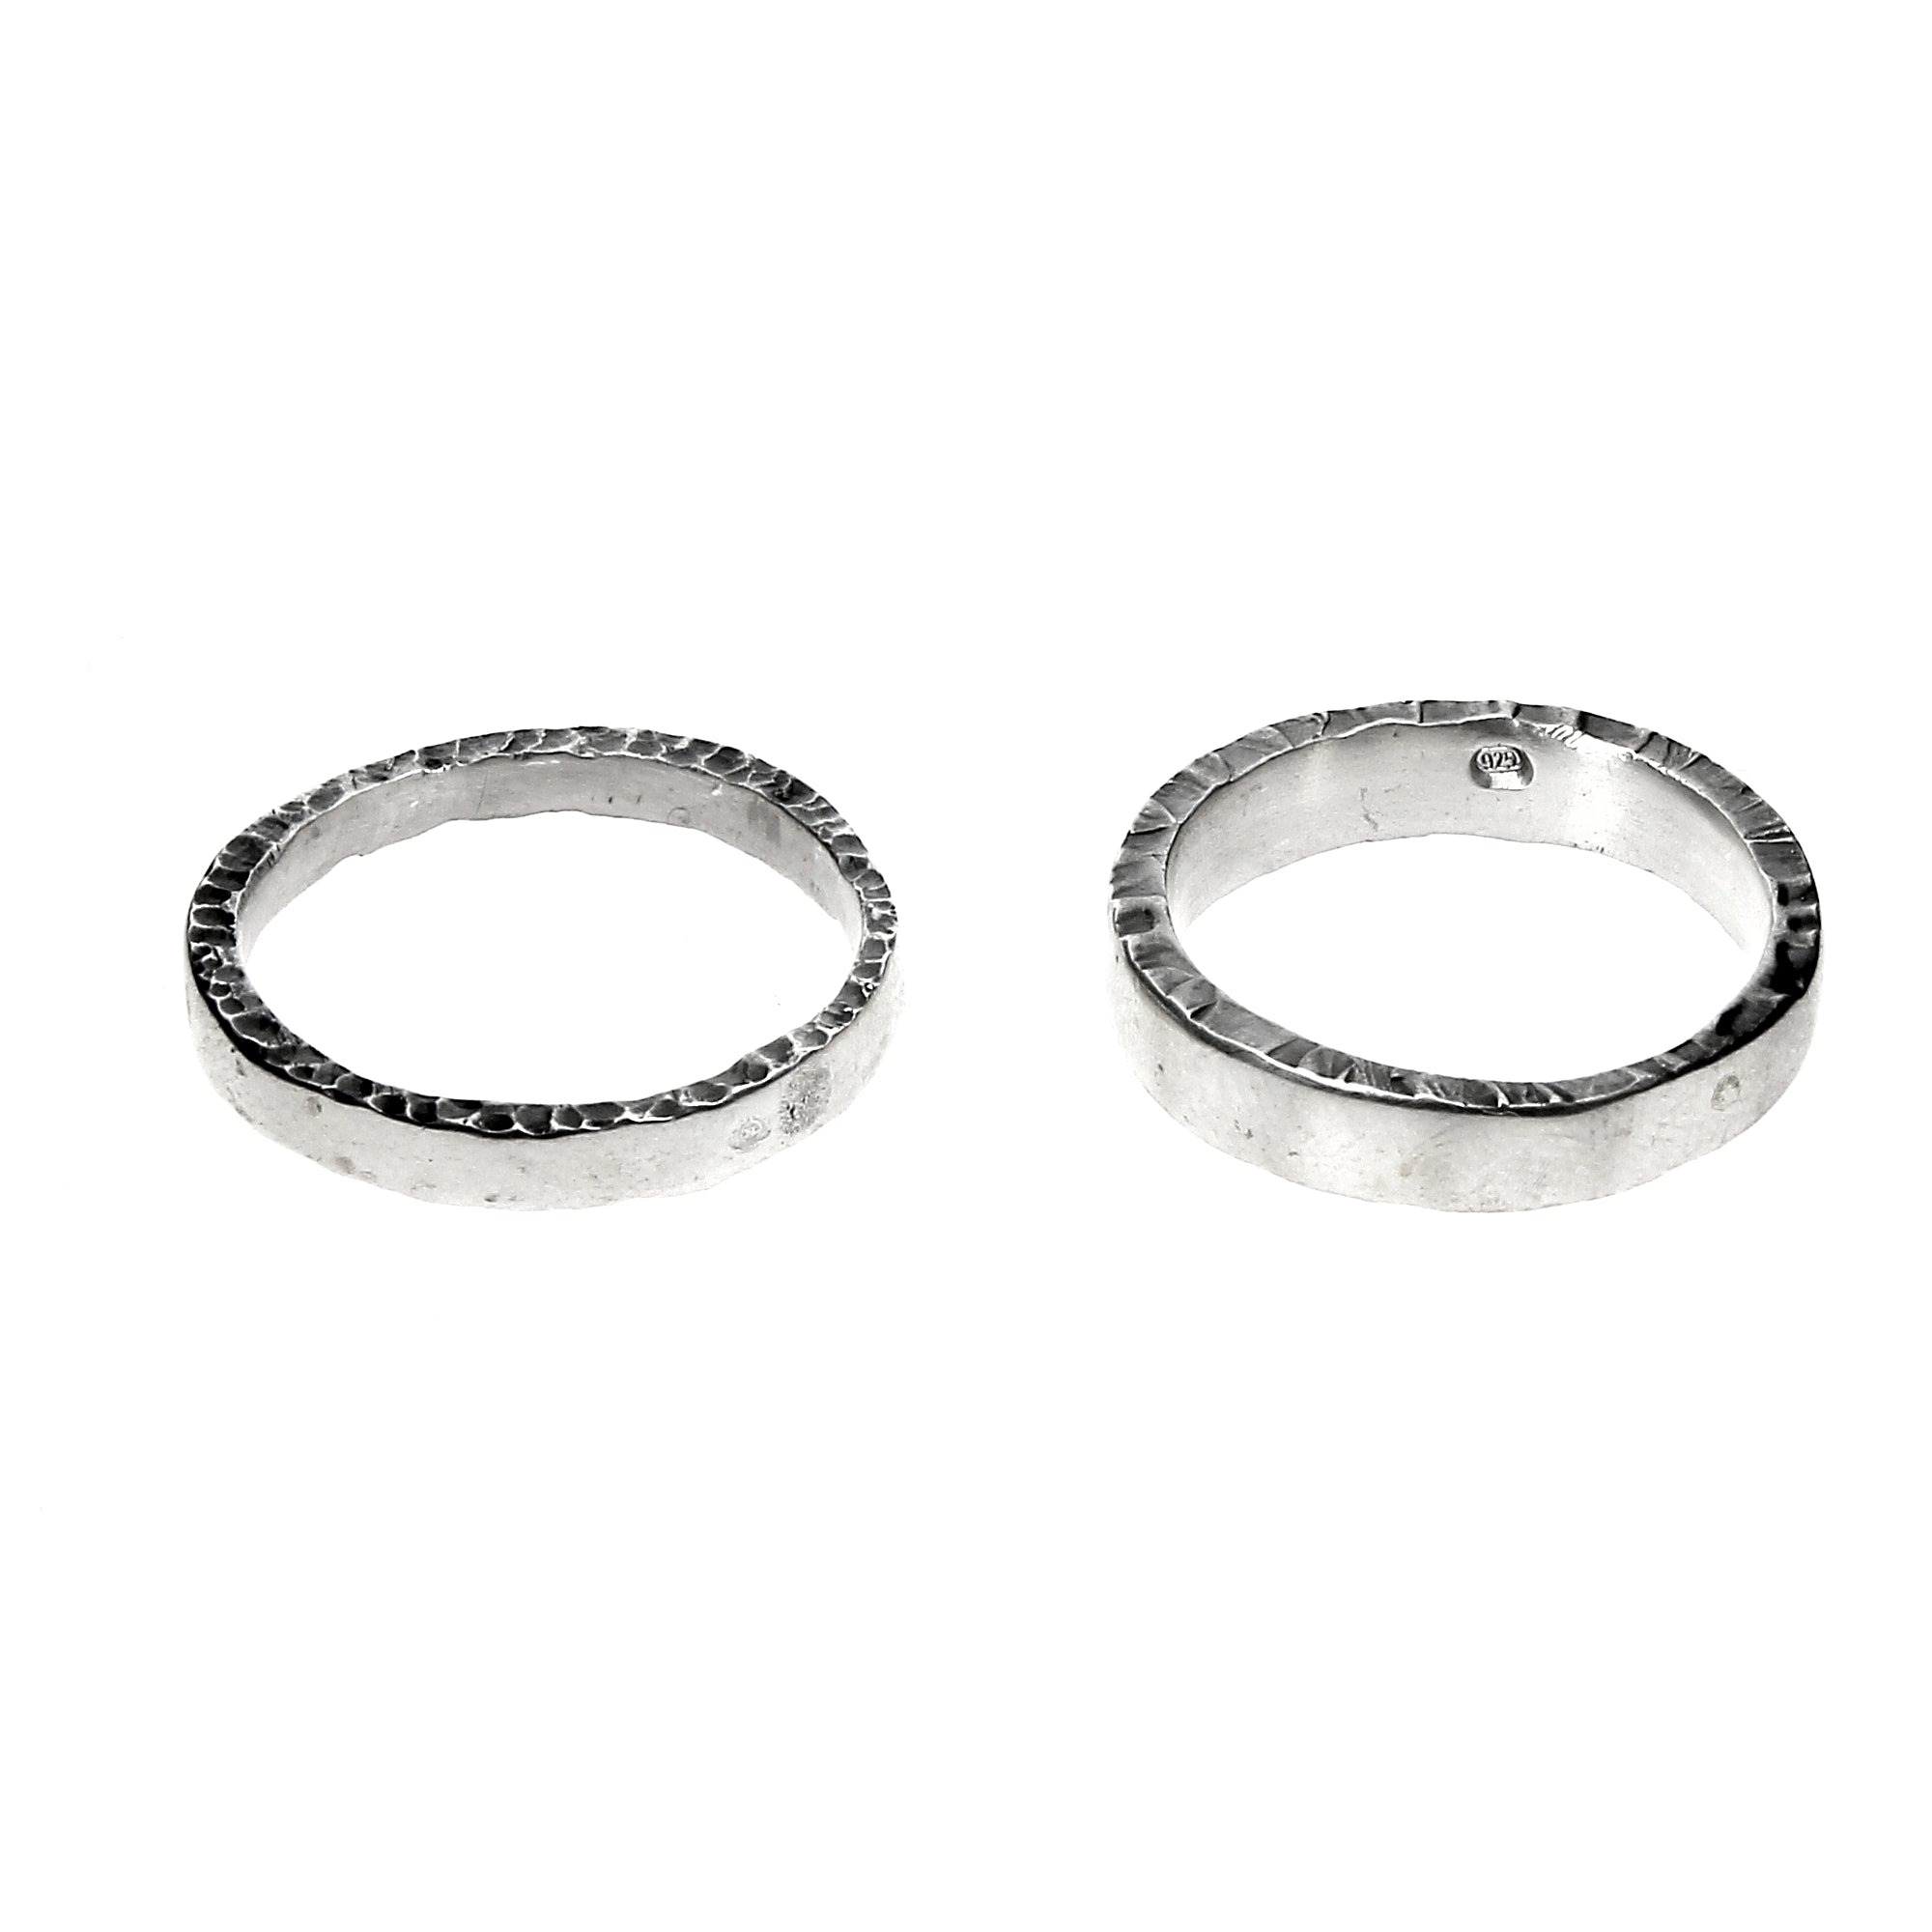 A Pair of Simple Rings